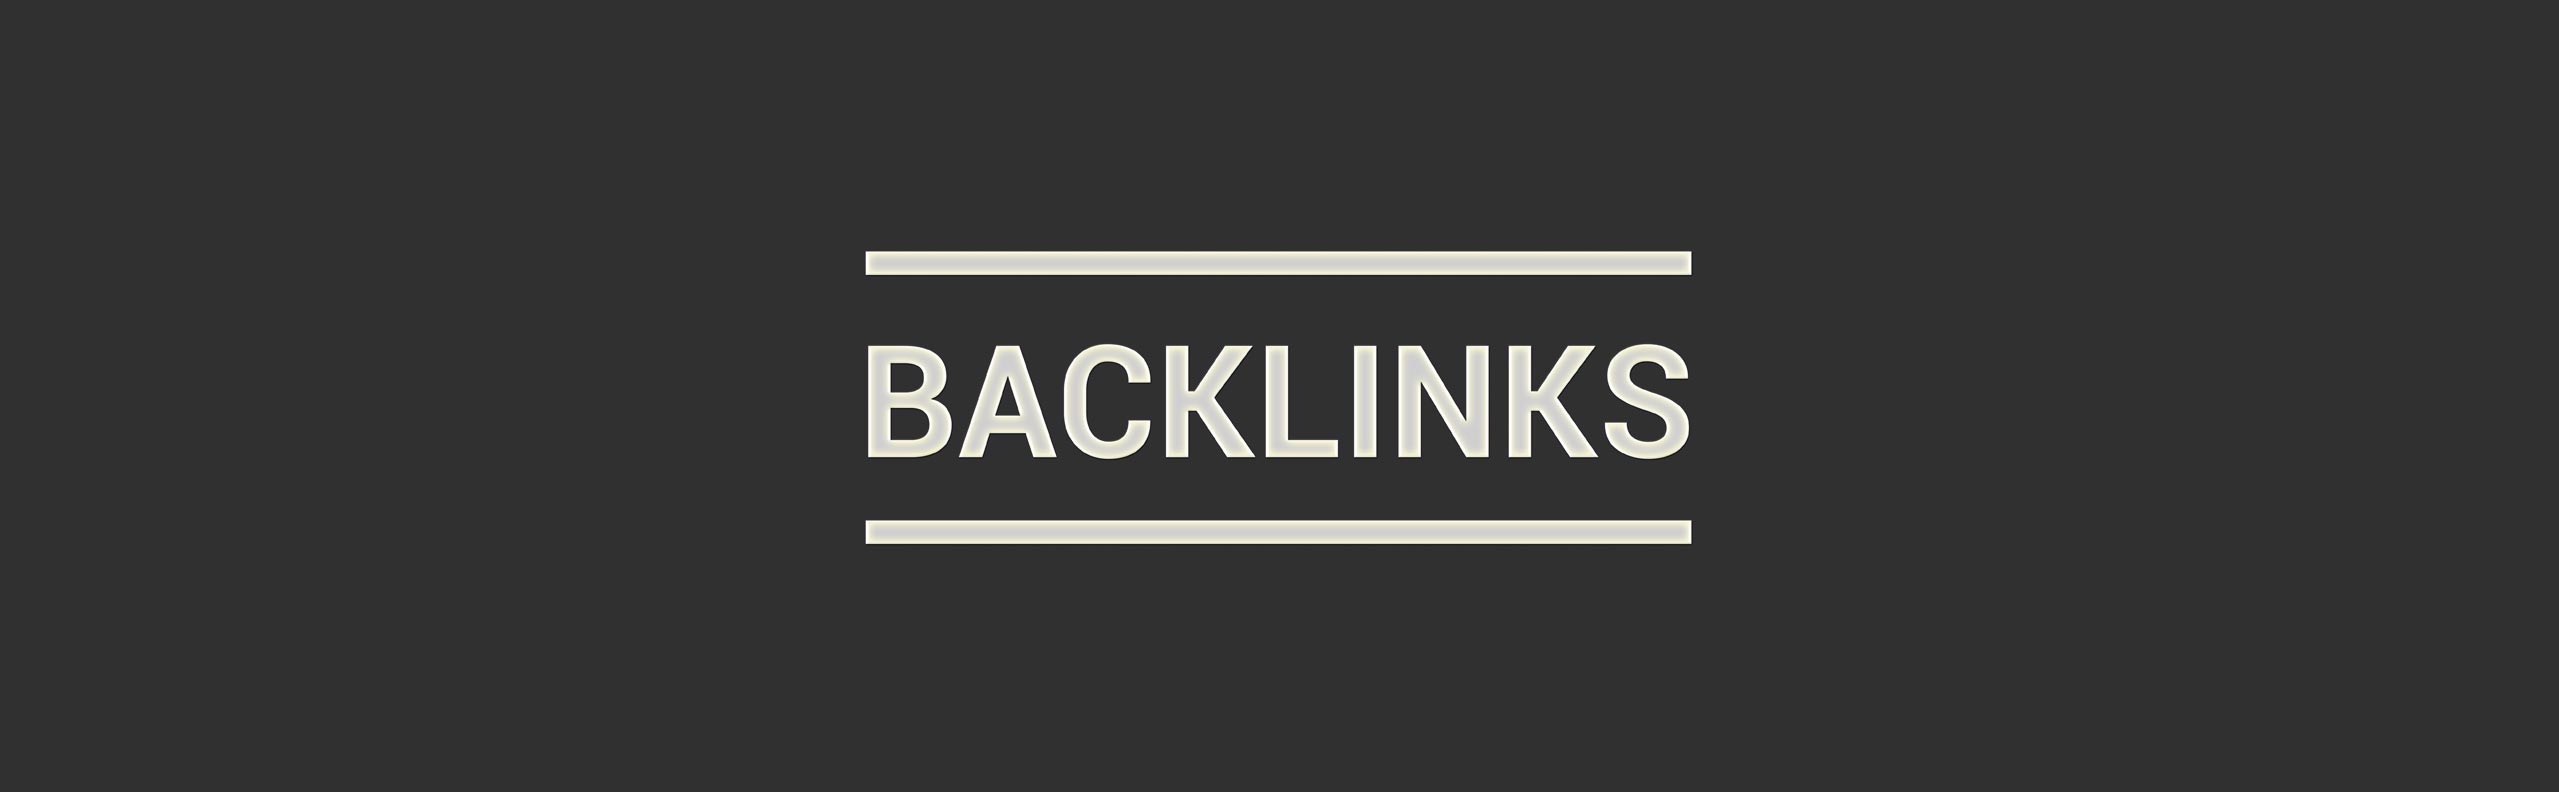 10 Best Back-links Ideas